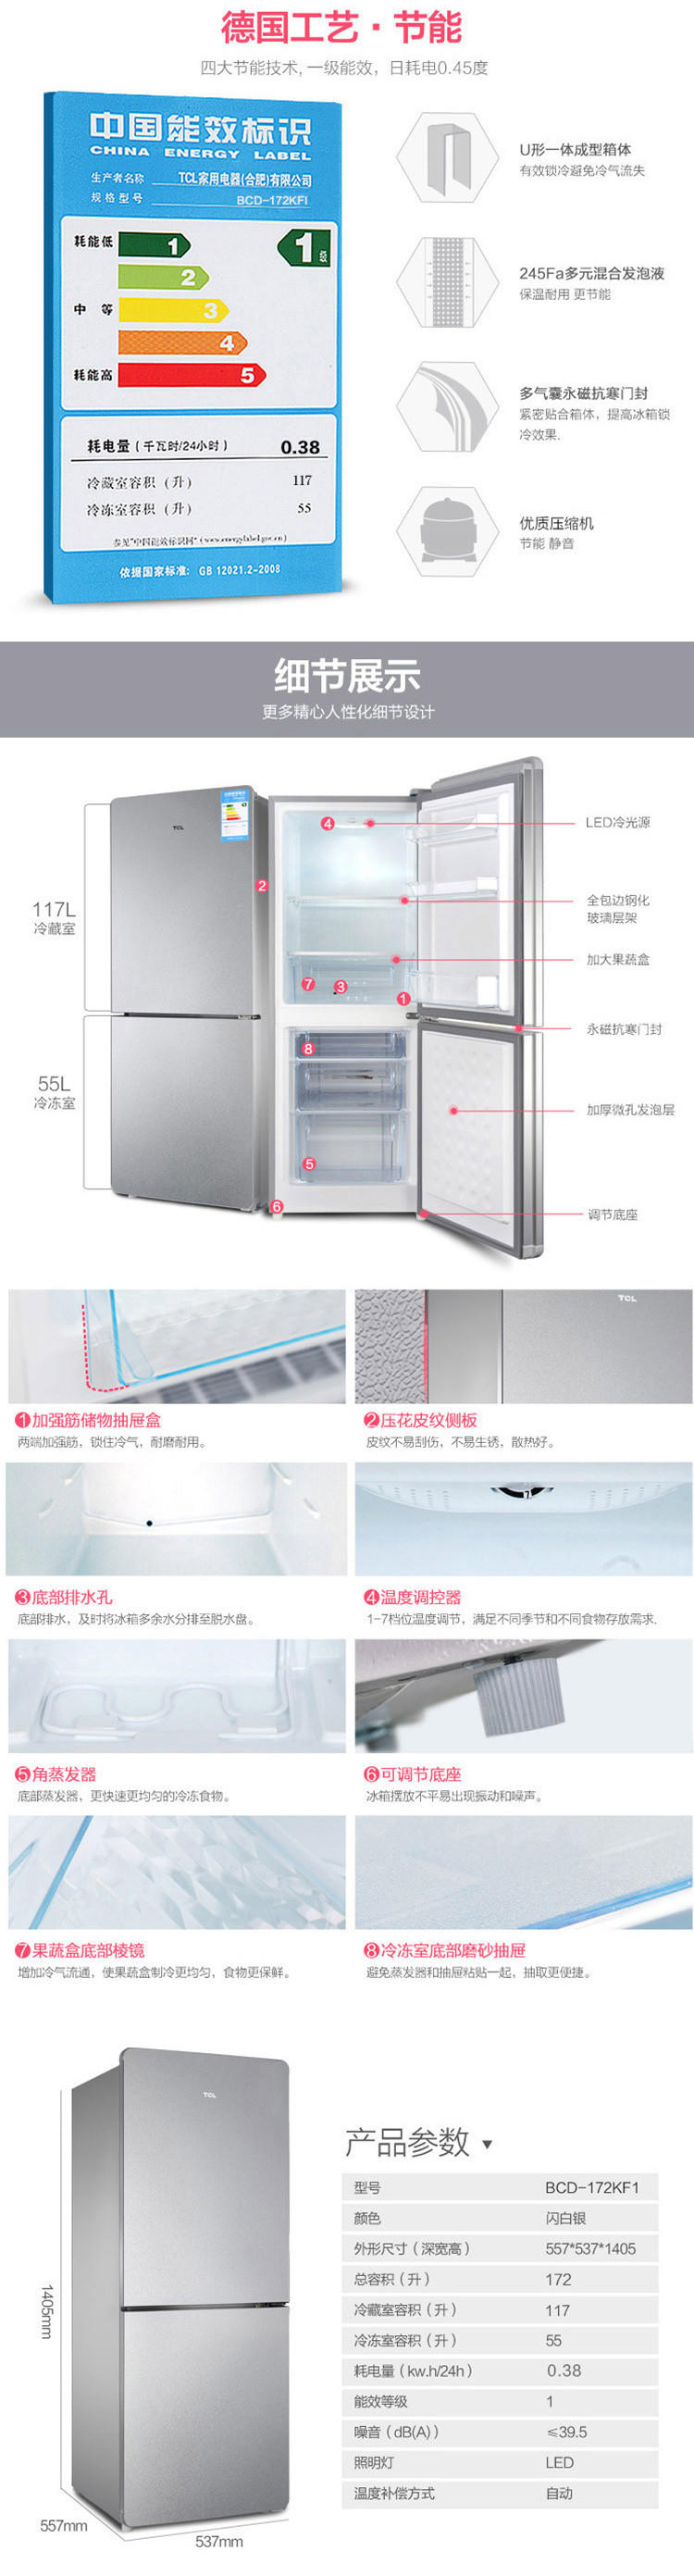 【邮乐新乡馆】TCL 冰箱BCD-172KF1 闪白银172升 双开门立式冰箱